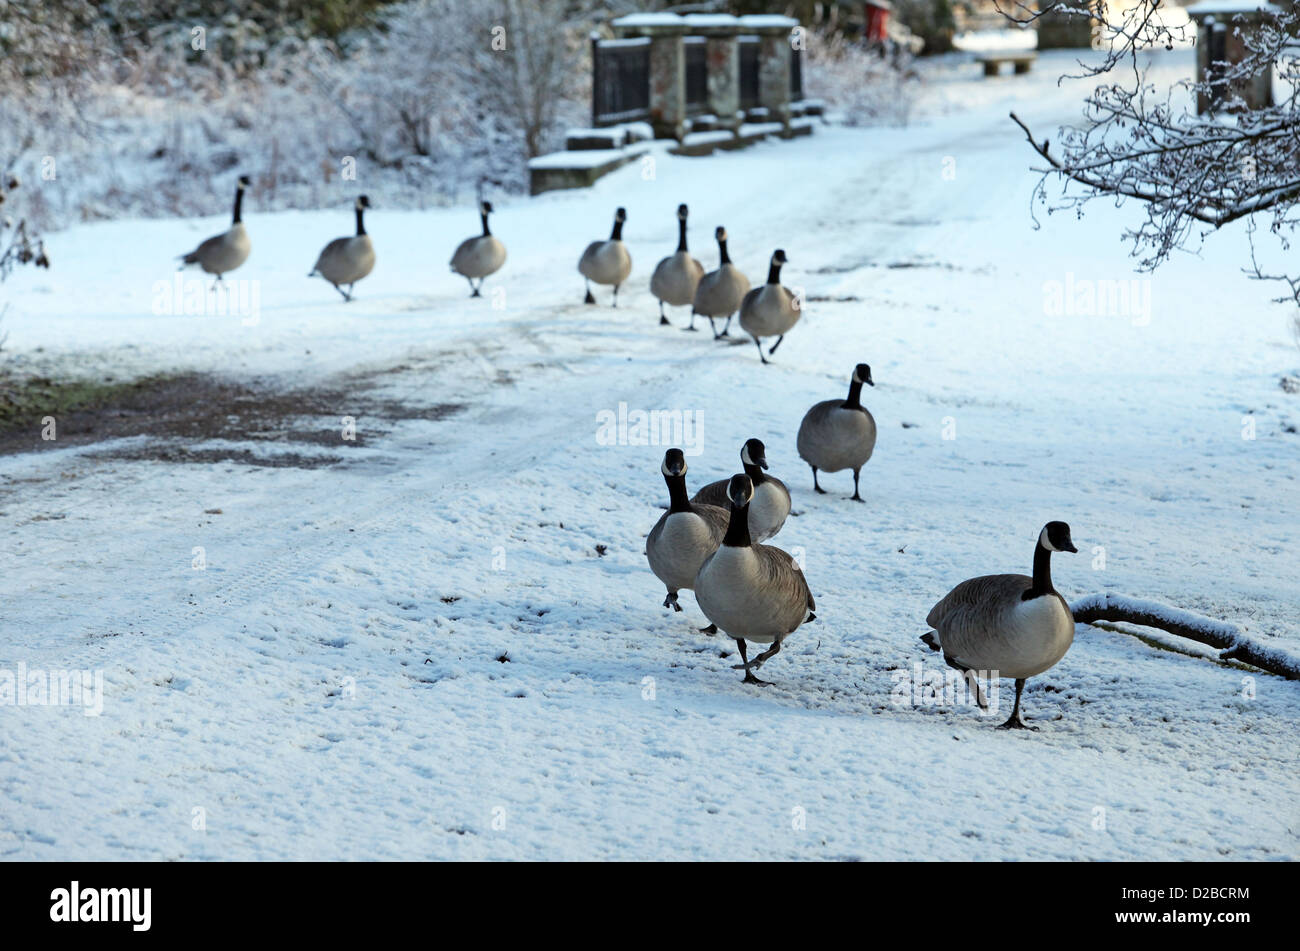 Les Bernaches du Canada sauvage de marcher à travers la neige en une seule ligne de fichier en hiver au Royaume-Uni Banque D'Images